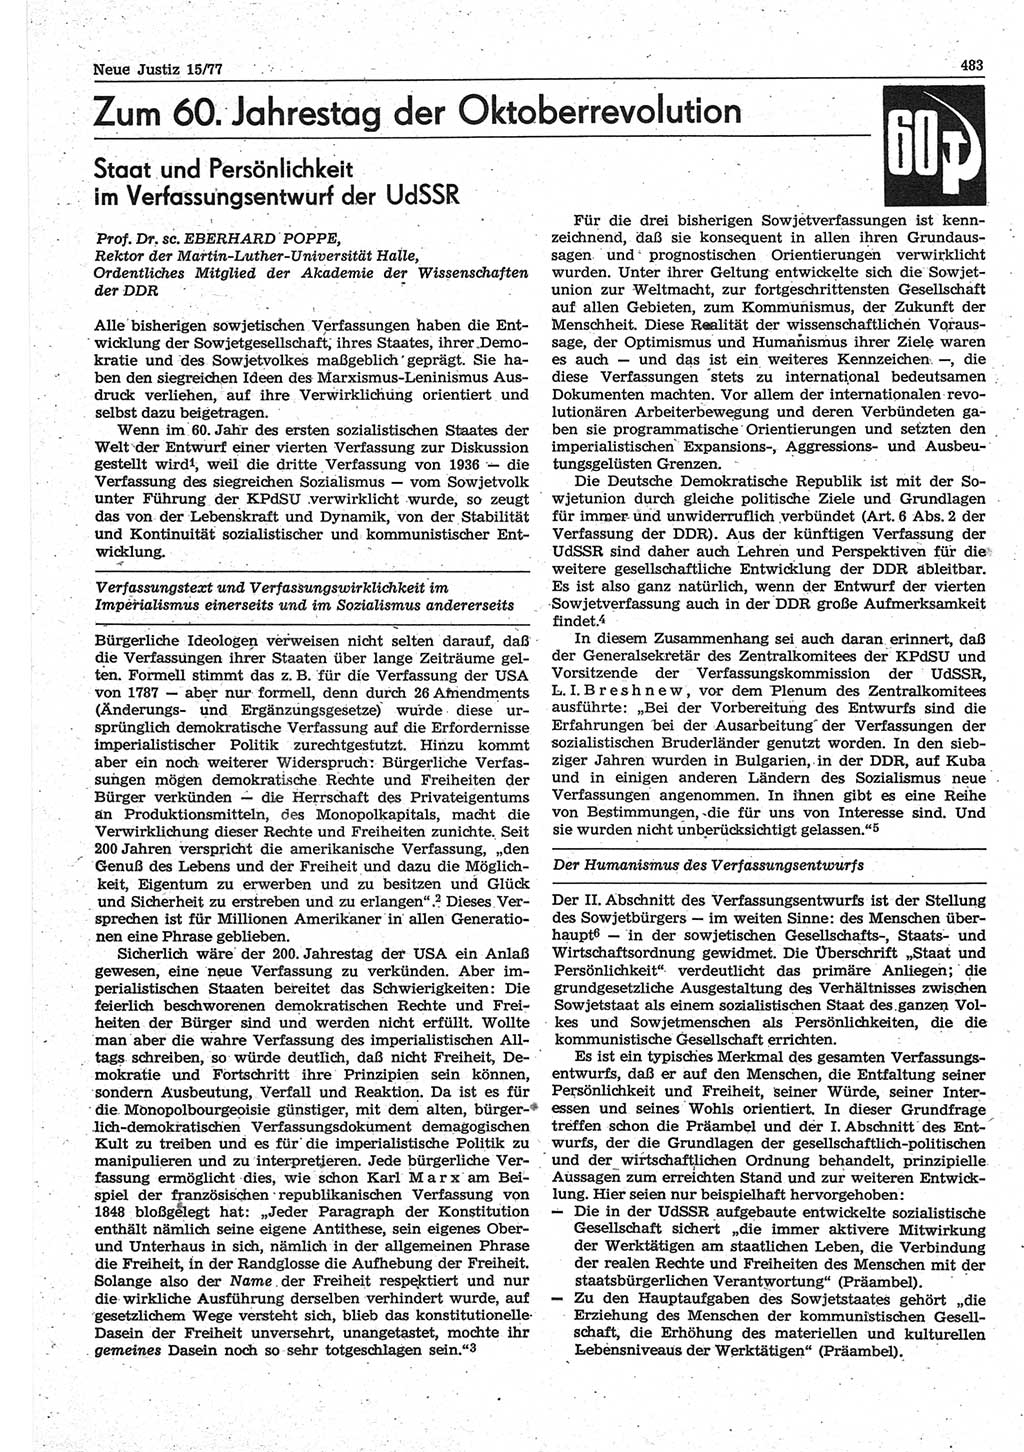 Neue Justiz (NJ), Zeitschrift für Recht und Rechtswissenschaft-Zeitschrift, sozialistisches Recht und Gesetzlichkeit, 31. Jahrgang 1977, Seite 483 (NJ DDR 1977, S. 483)